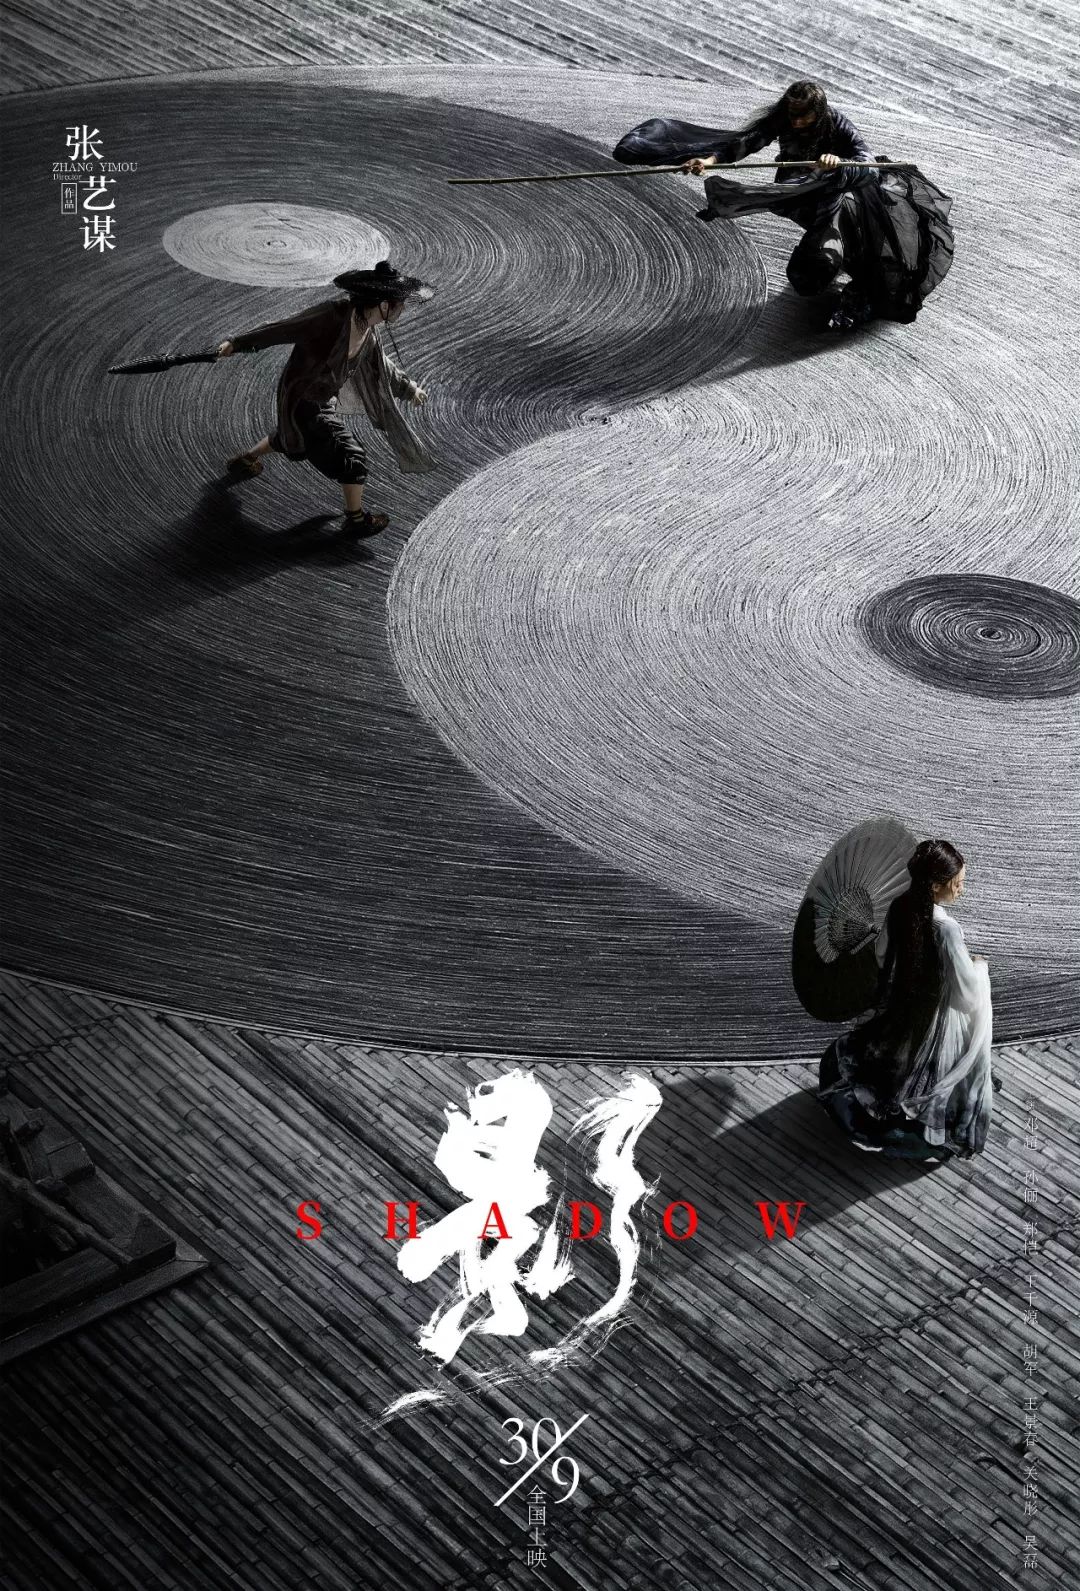 电影的黑白水墨画风格 很好地诠释了东方美学 在海报设计上也与电影